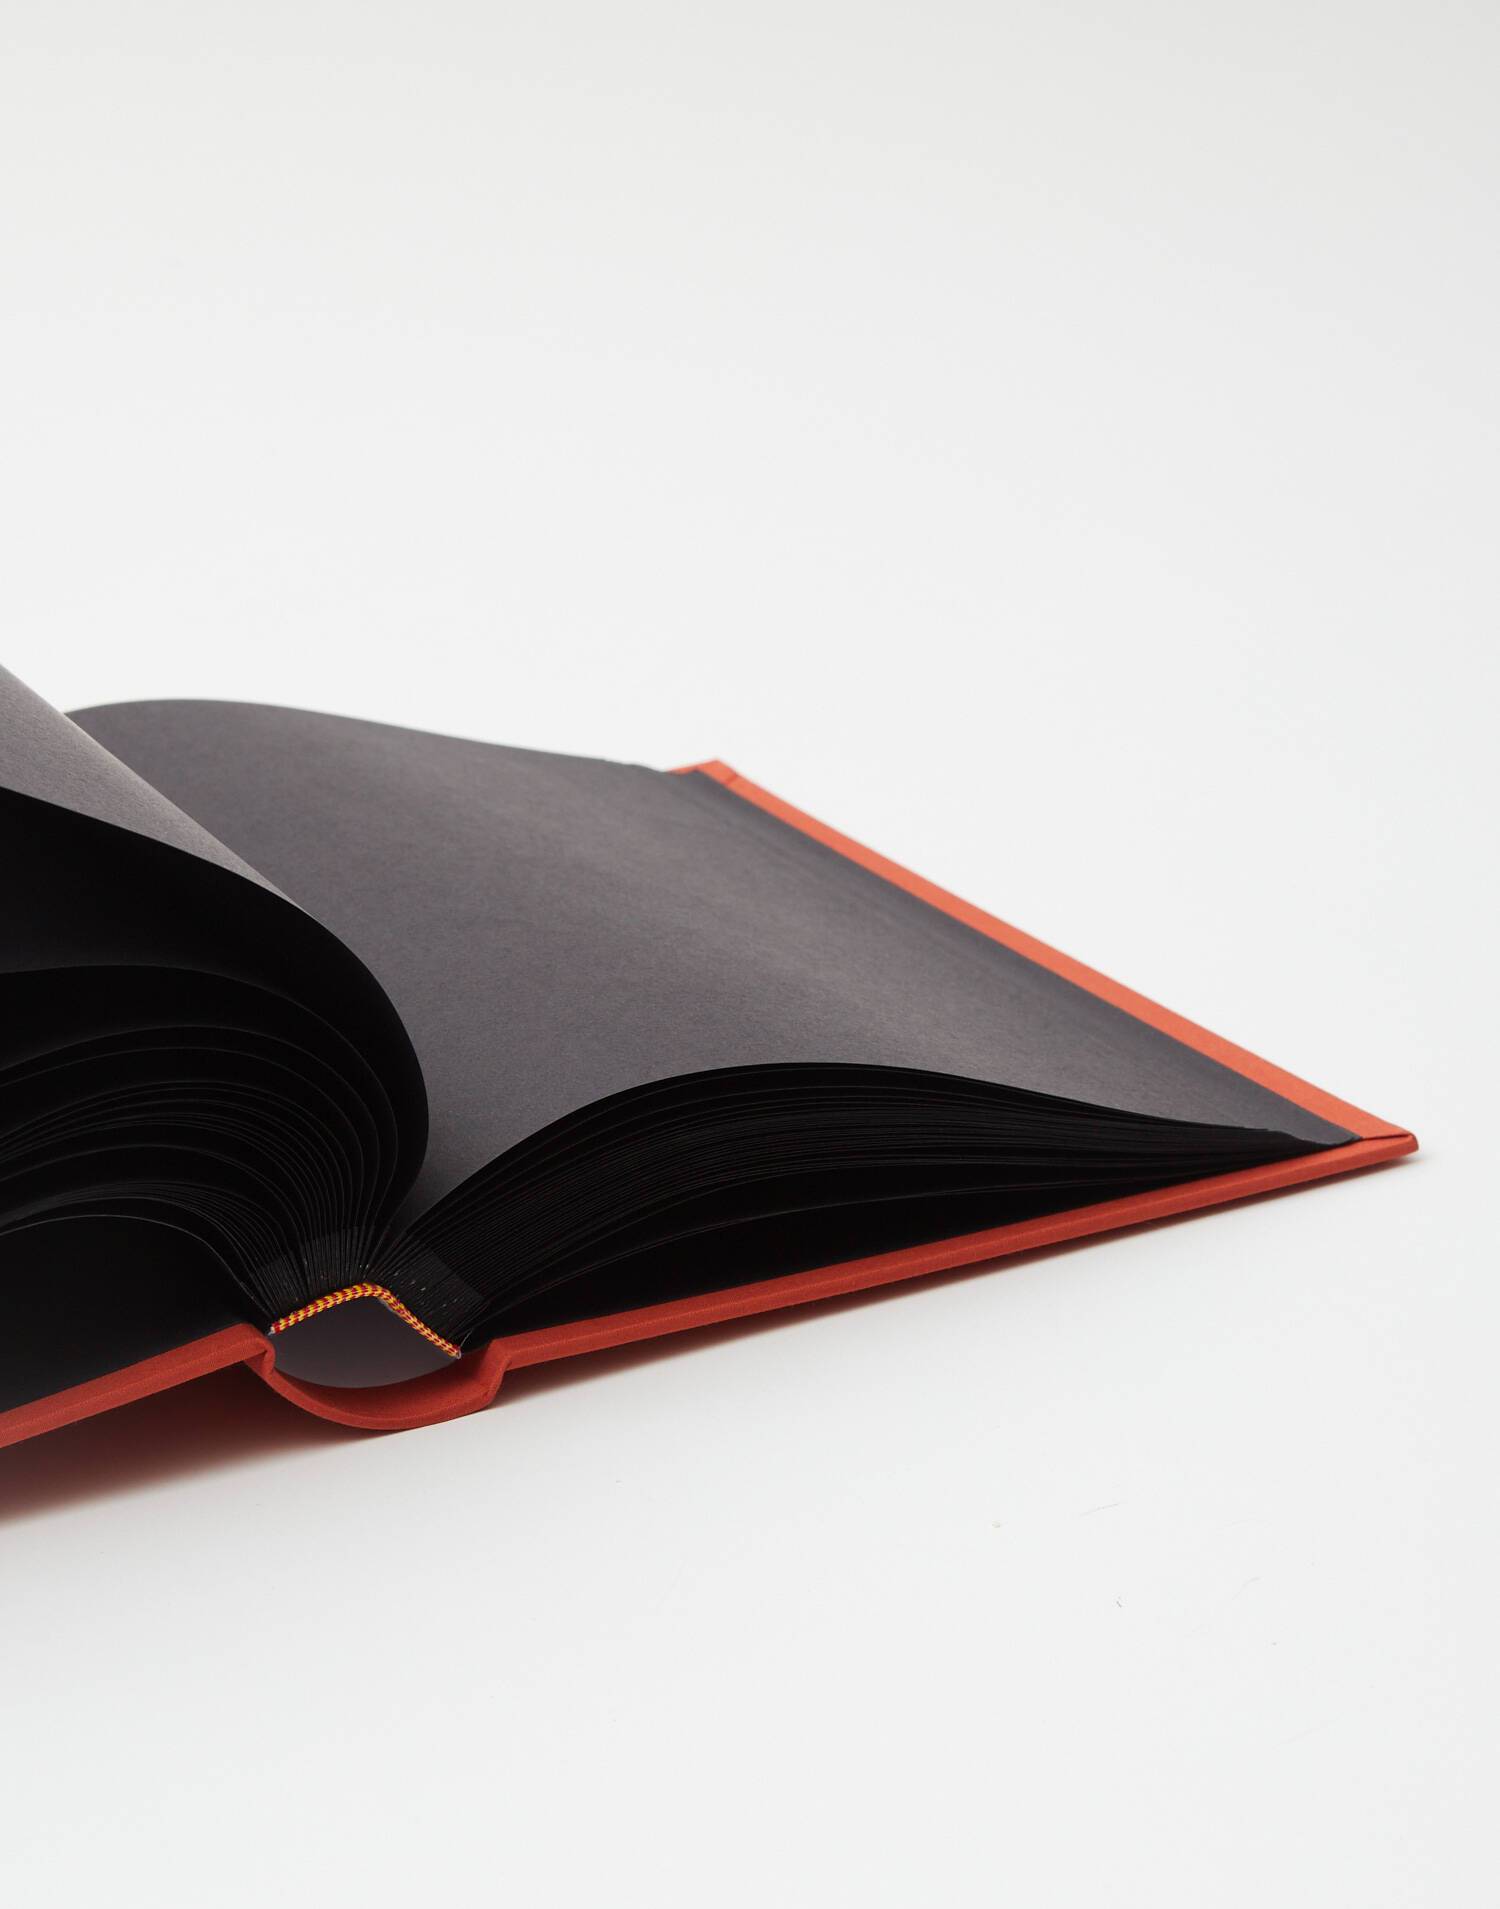 Cuadernos PAPEL ARMENIA DE ARMENIA x30